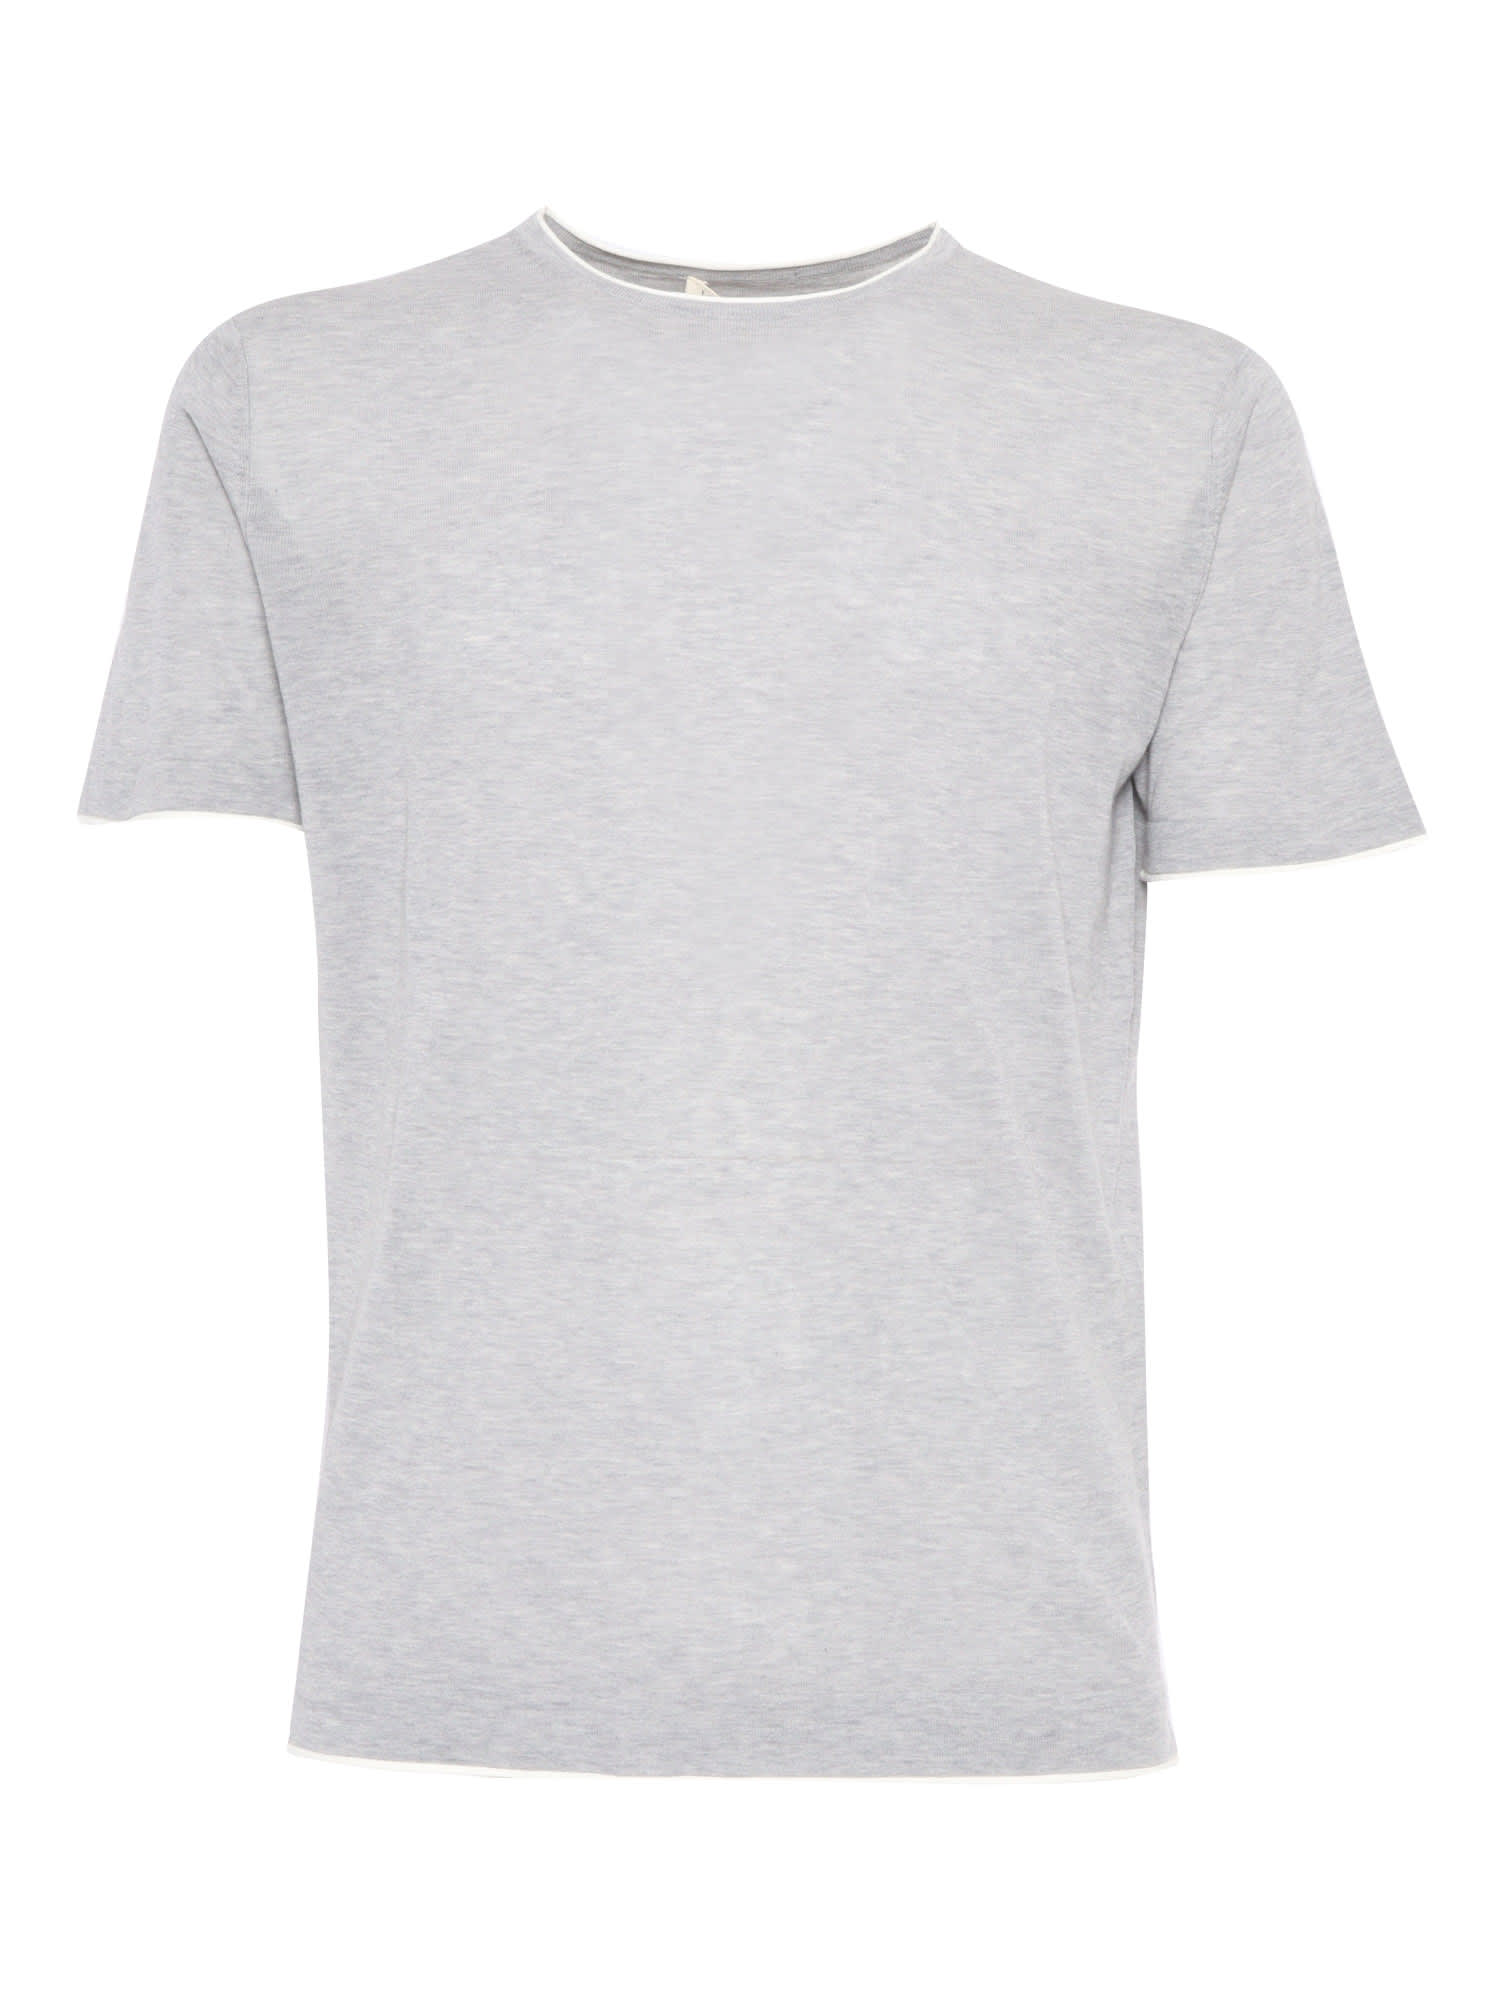 L. B.M. 1911 Gray Stretch Cotton T-shirt